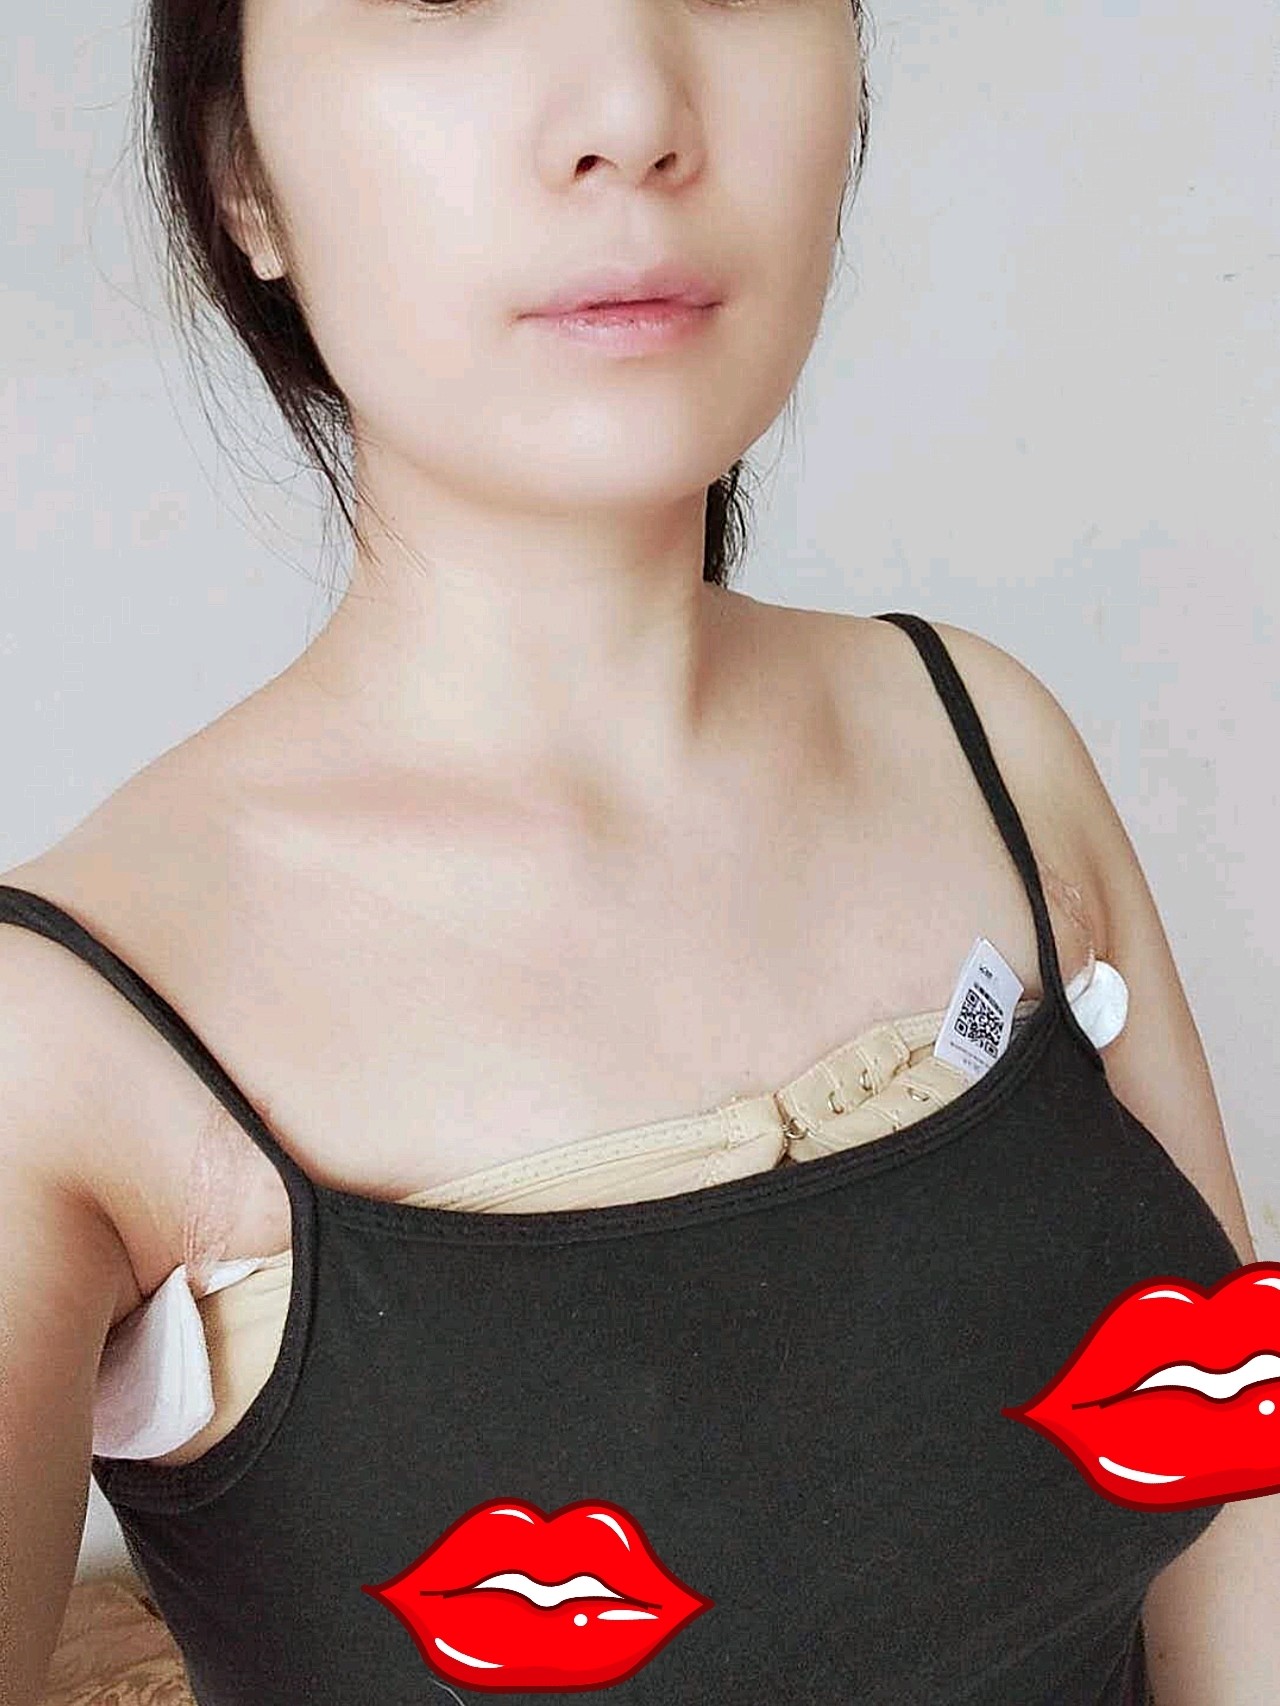 20岁女生胸下垂图片